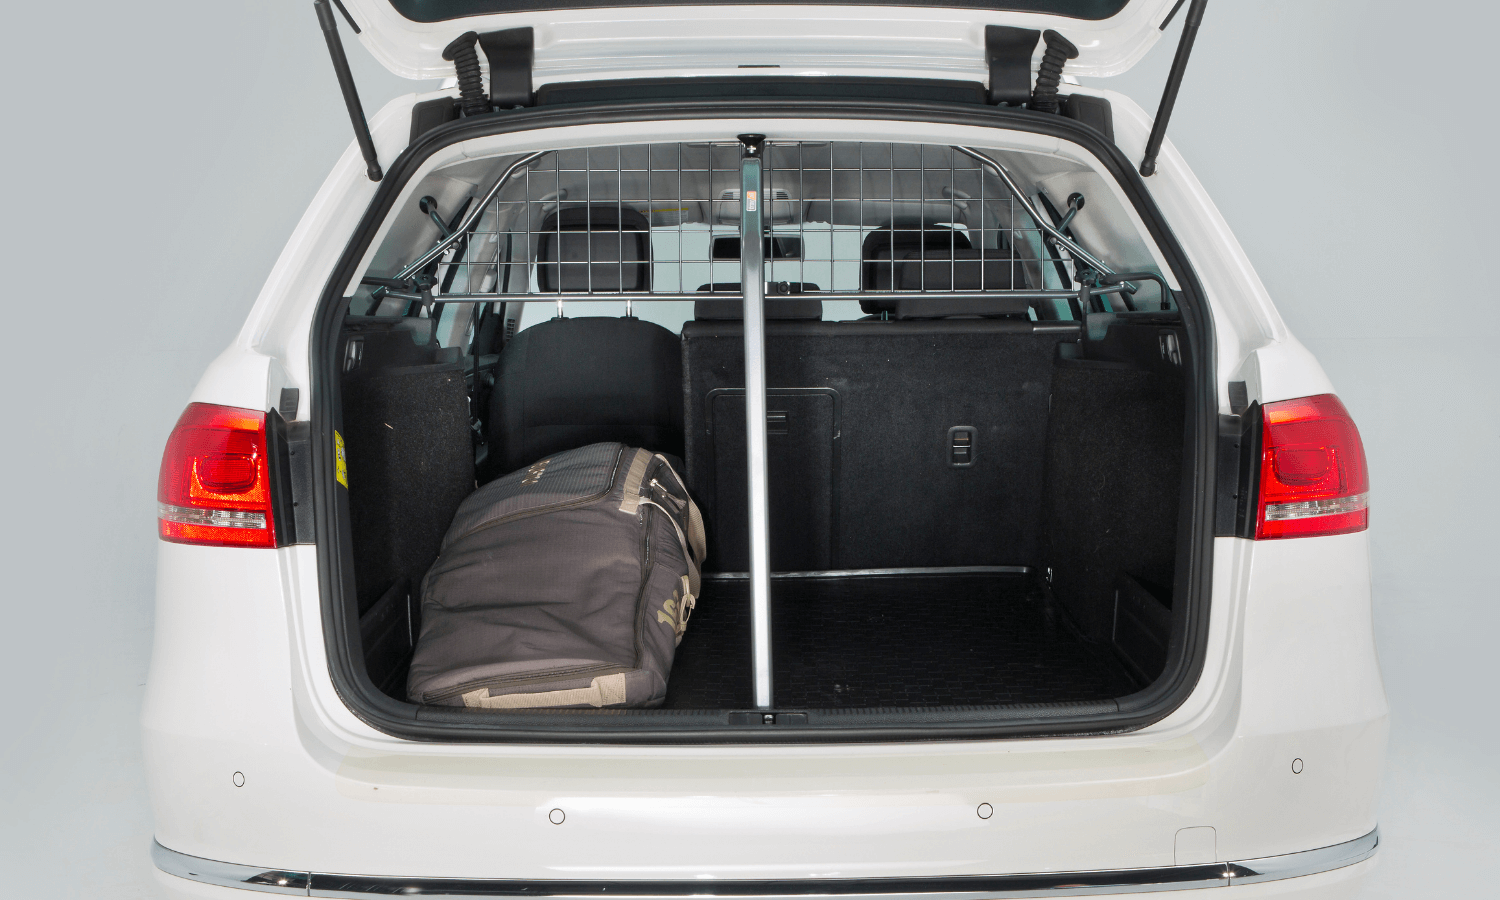 Wer im Winter eine Snowboardtasche im Auto transportiert, sollte ein Gepäckschutzgitter nutzen, unter dem man durchladen kann. © Travall